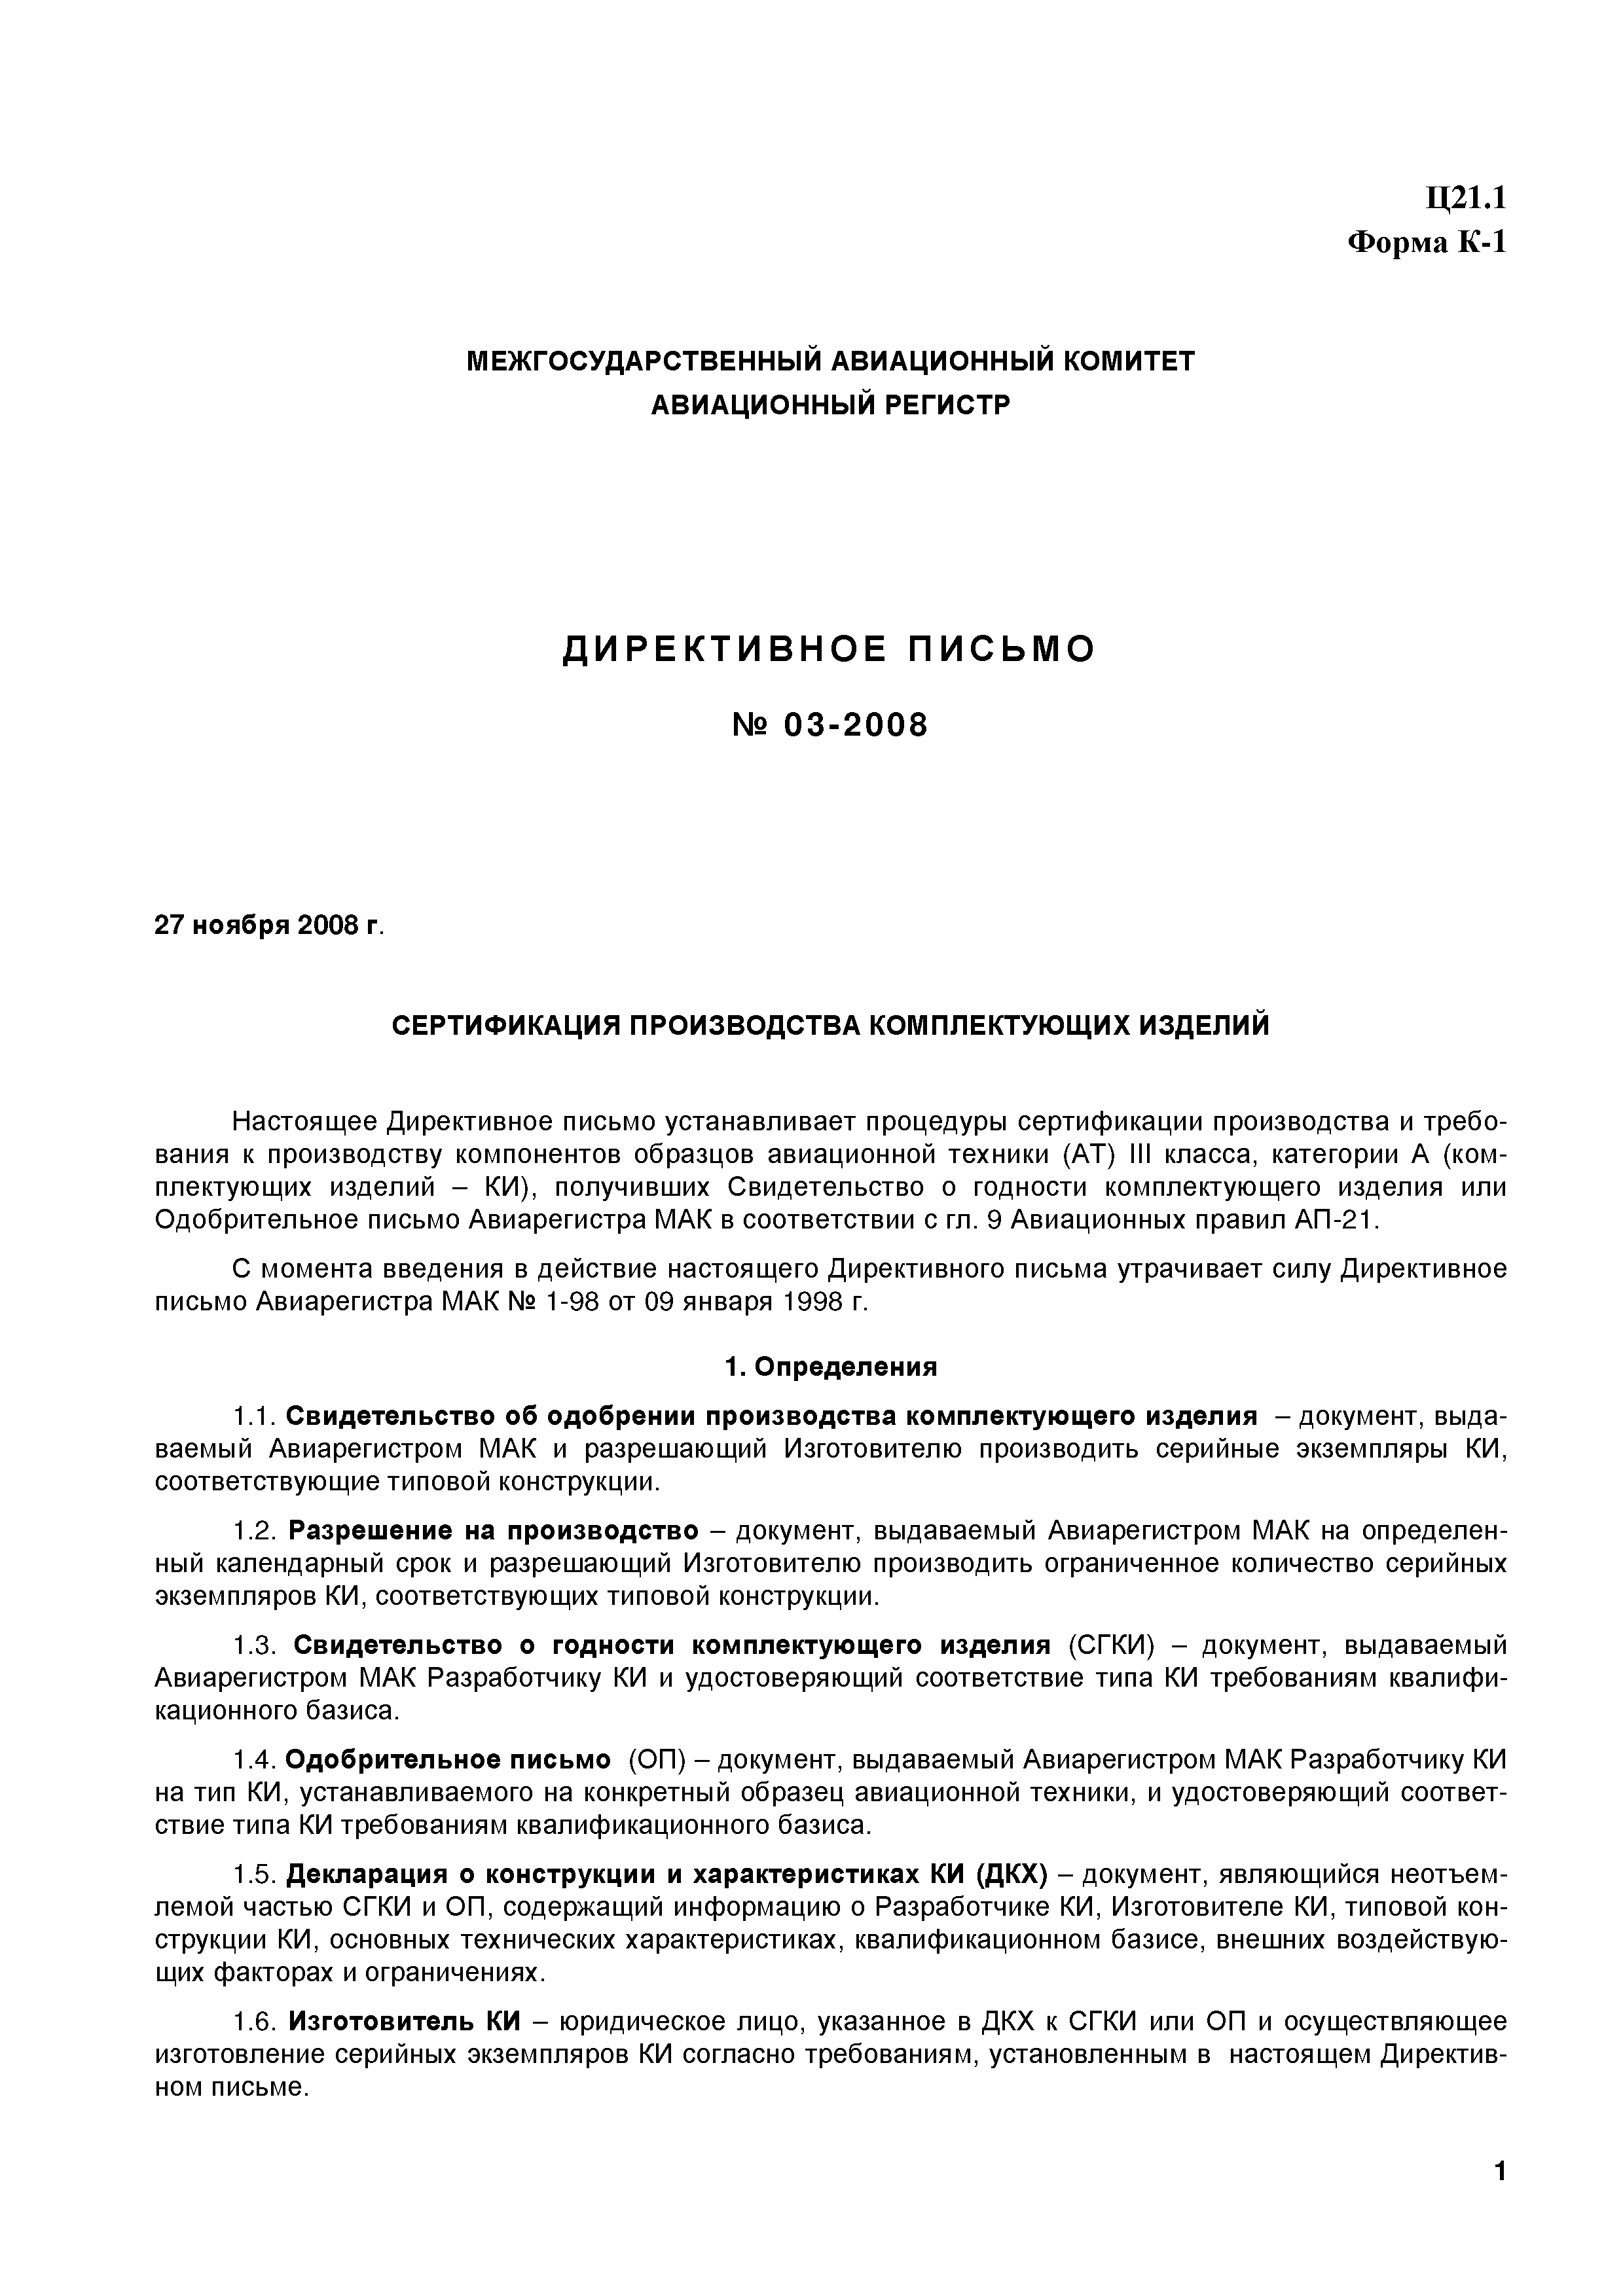 Директивное письмо 03-2008